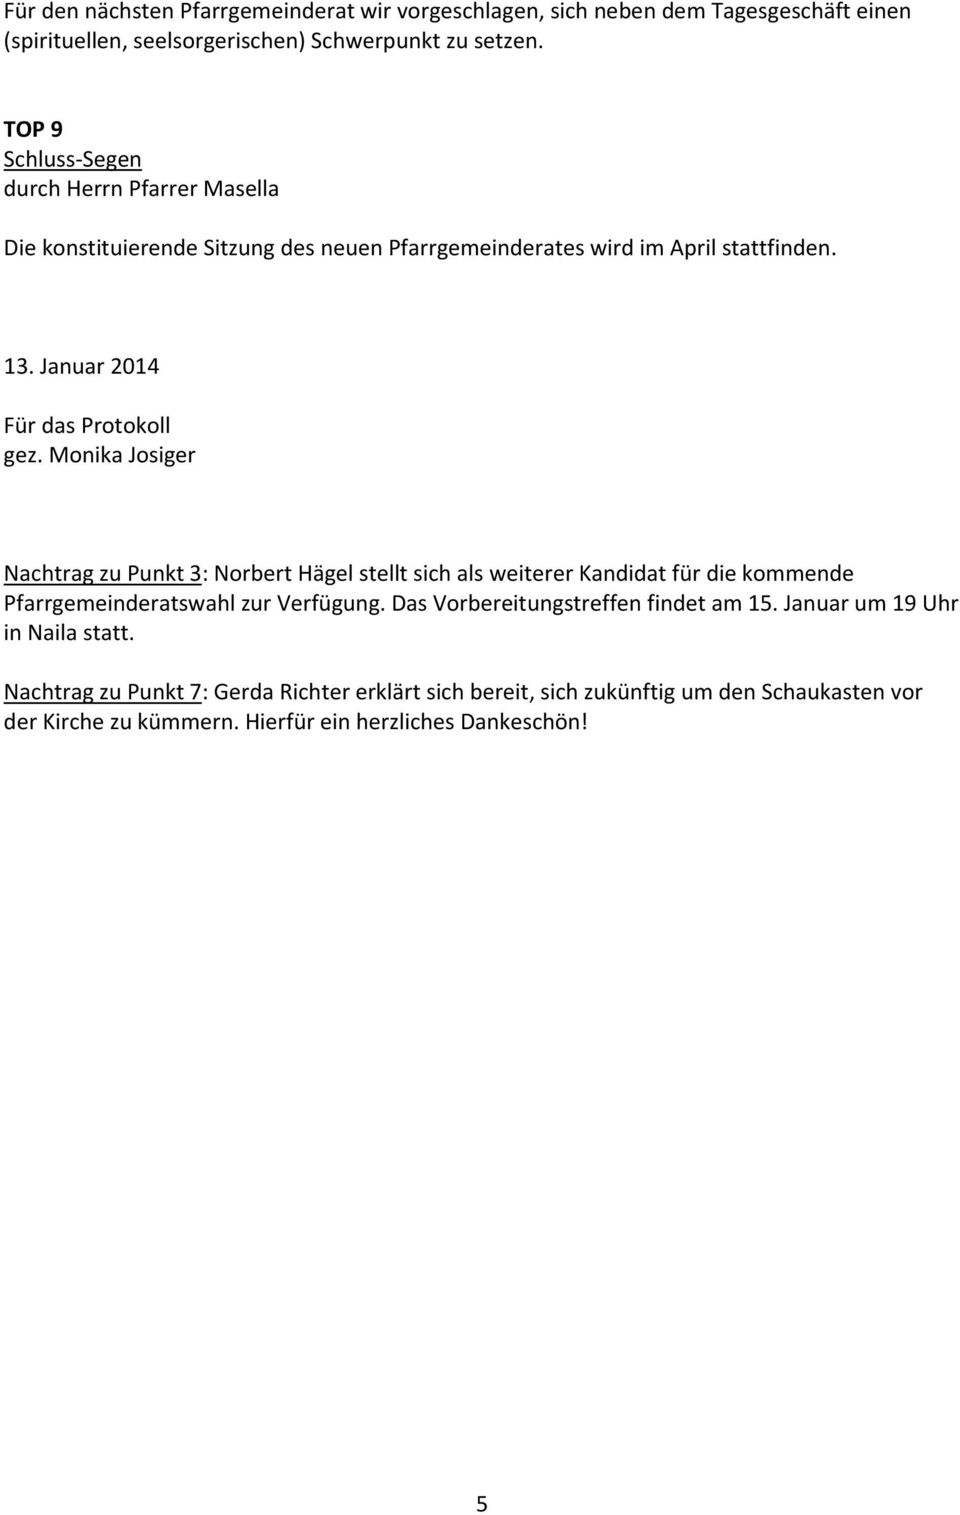 Monika Josiger Nachtrag zu Punkt 3: Norbert Hägel stellt sich als weiterer Kandidat für die kommende Pfarrgemeinderatswahl zur Verfügung.